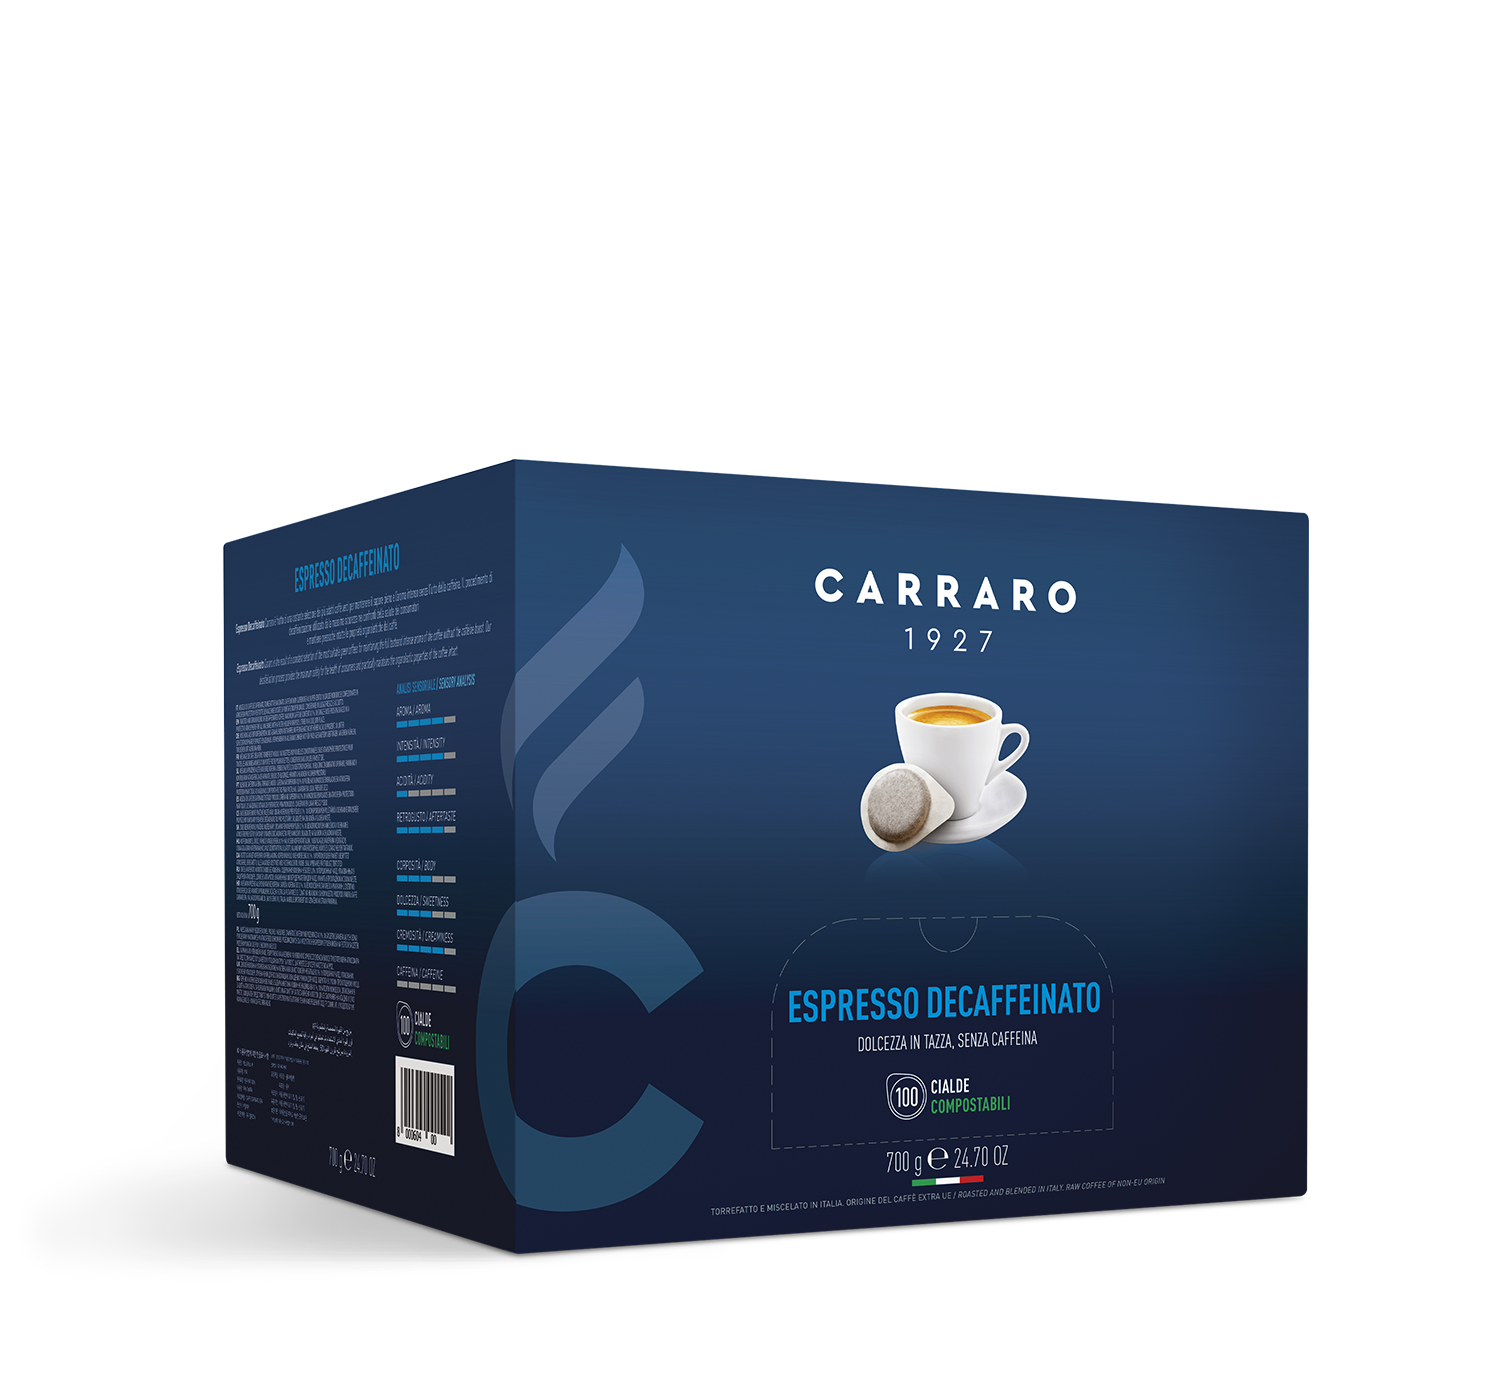 Retail - Espresso decaffeinato – 100 pods 7 g - Shop online Caffè Carraro